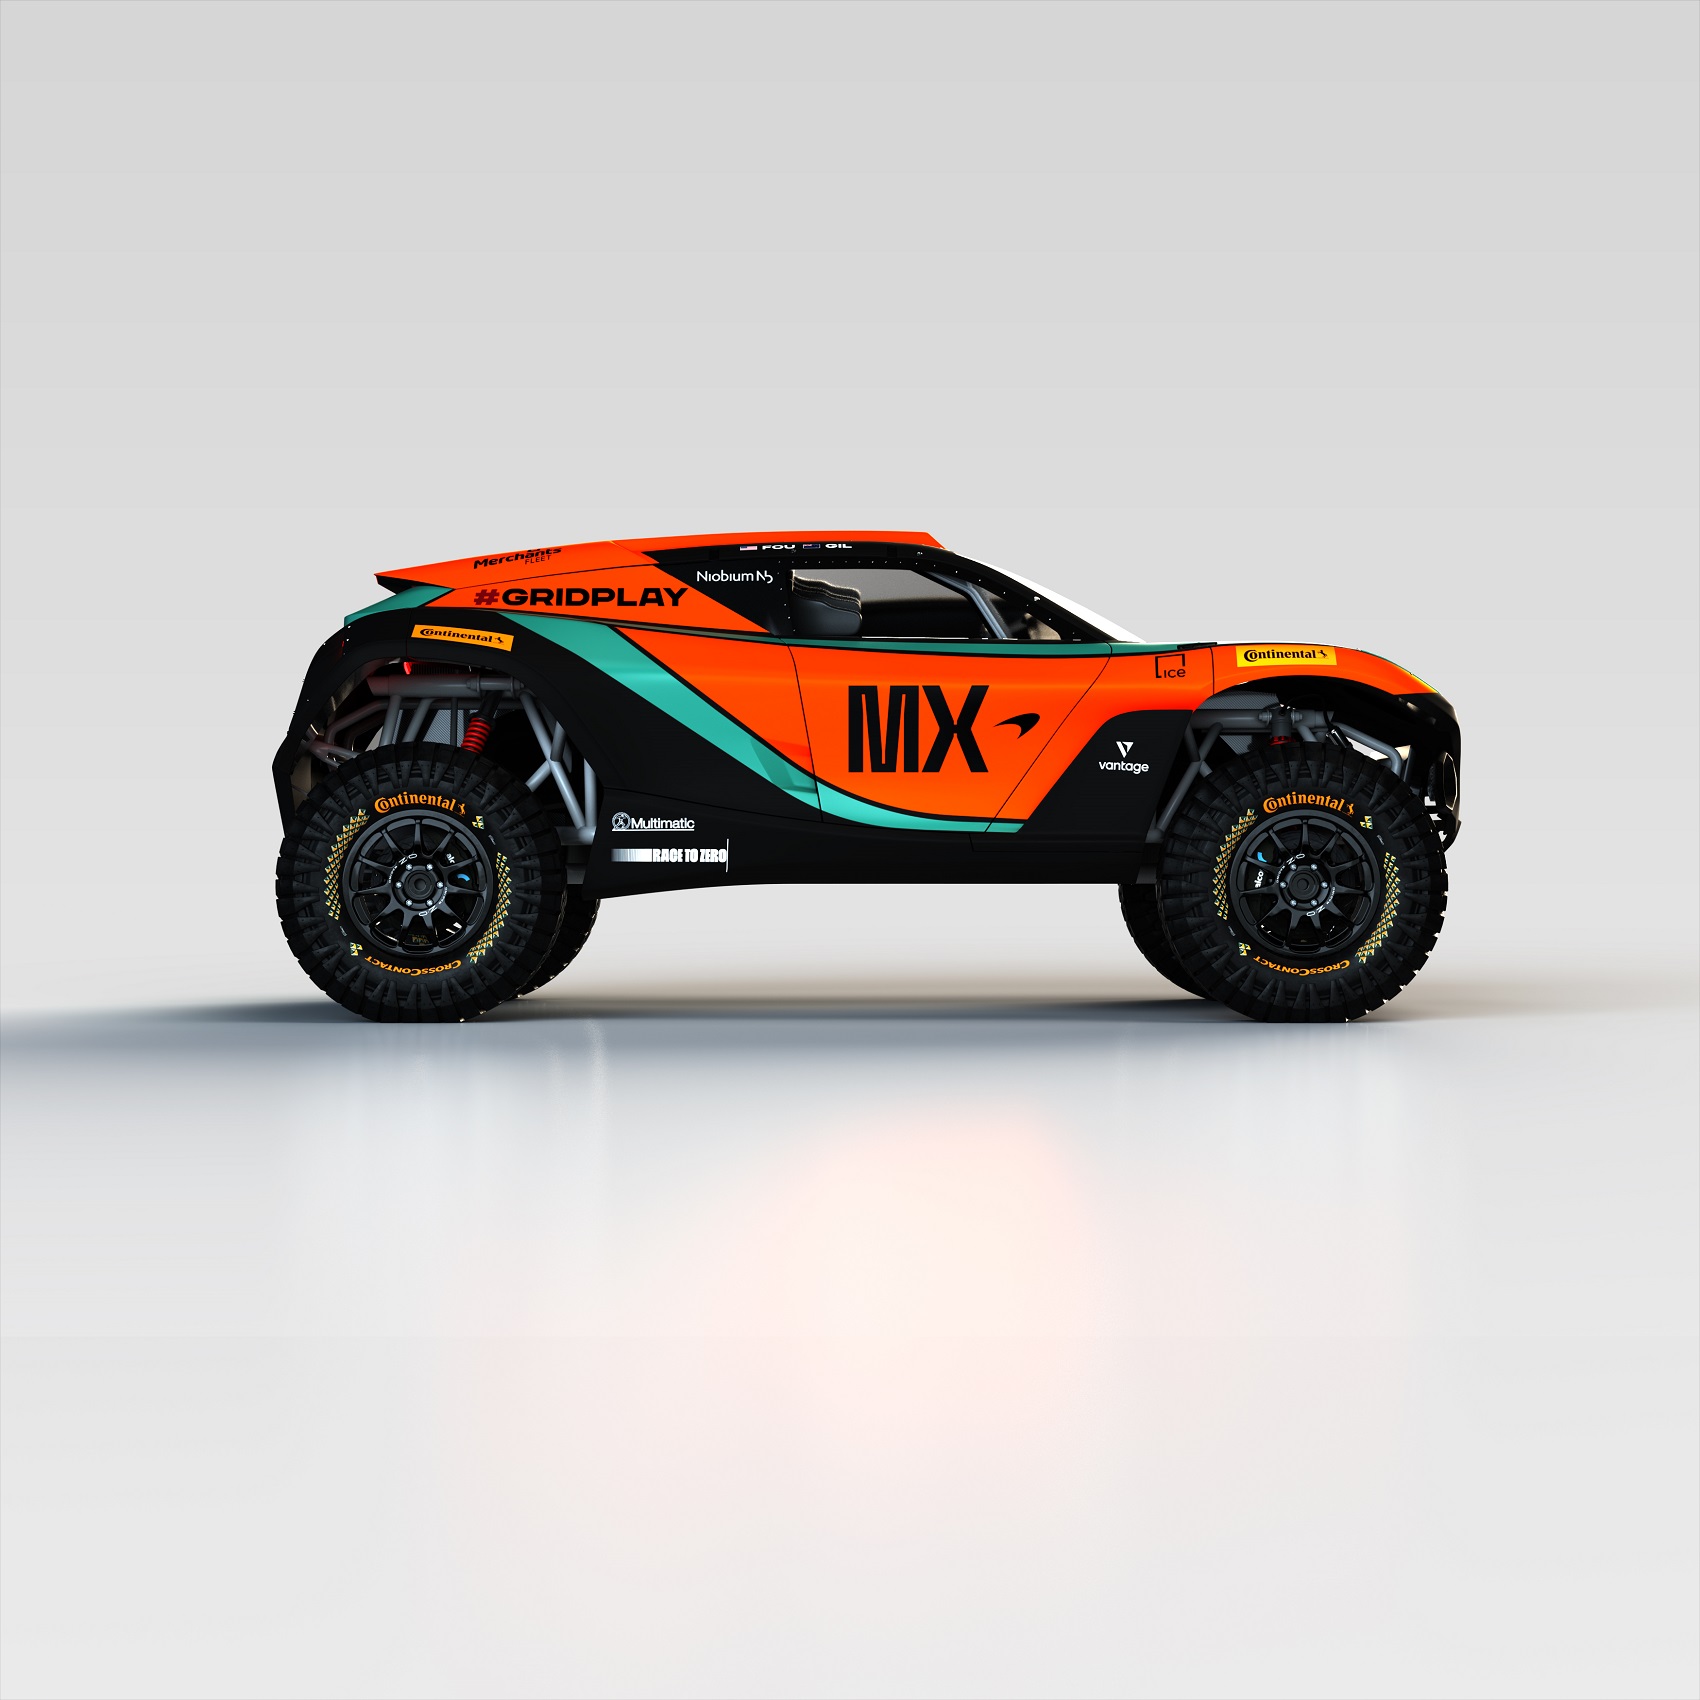 McLaren Extreme E 2022